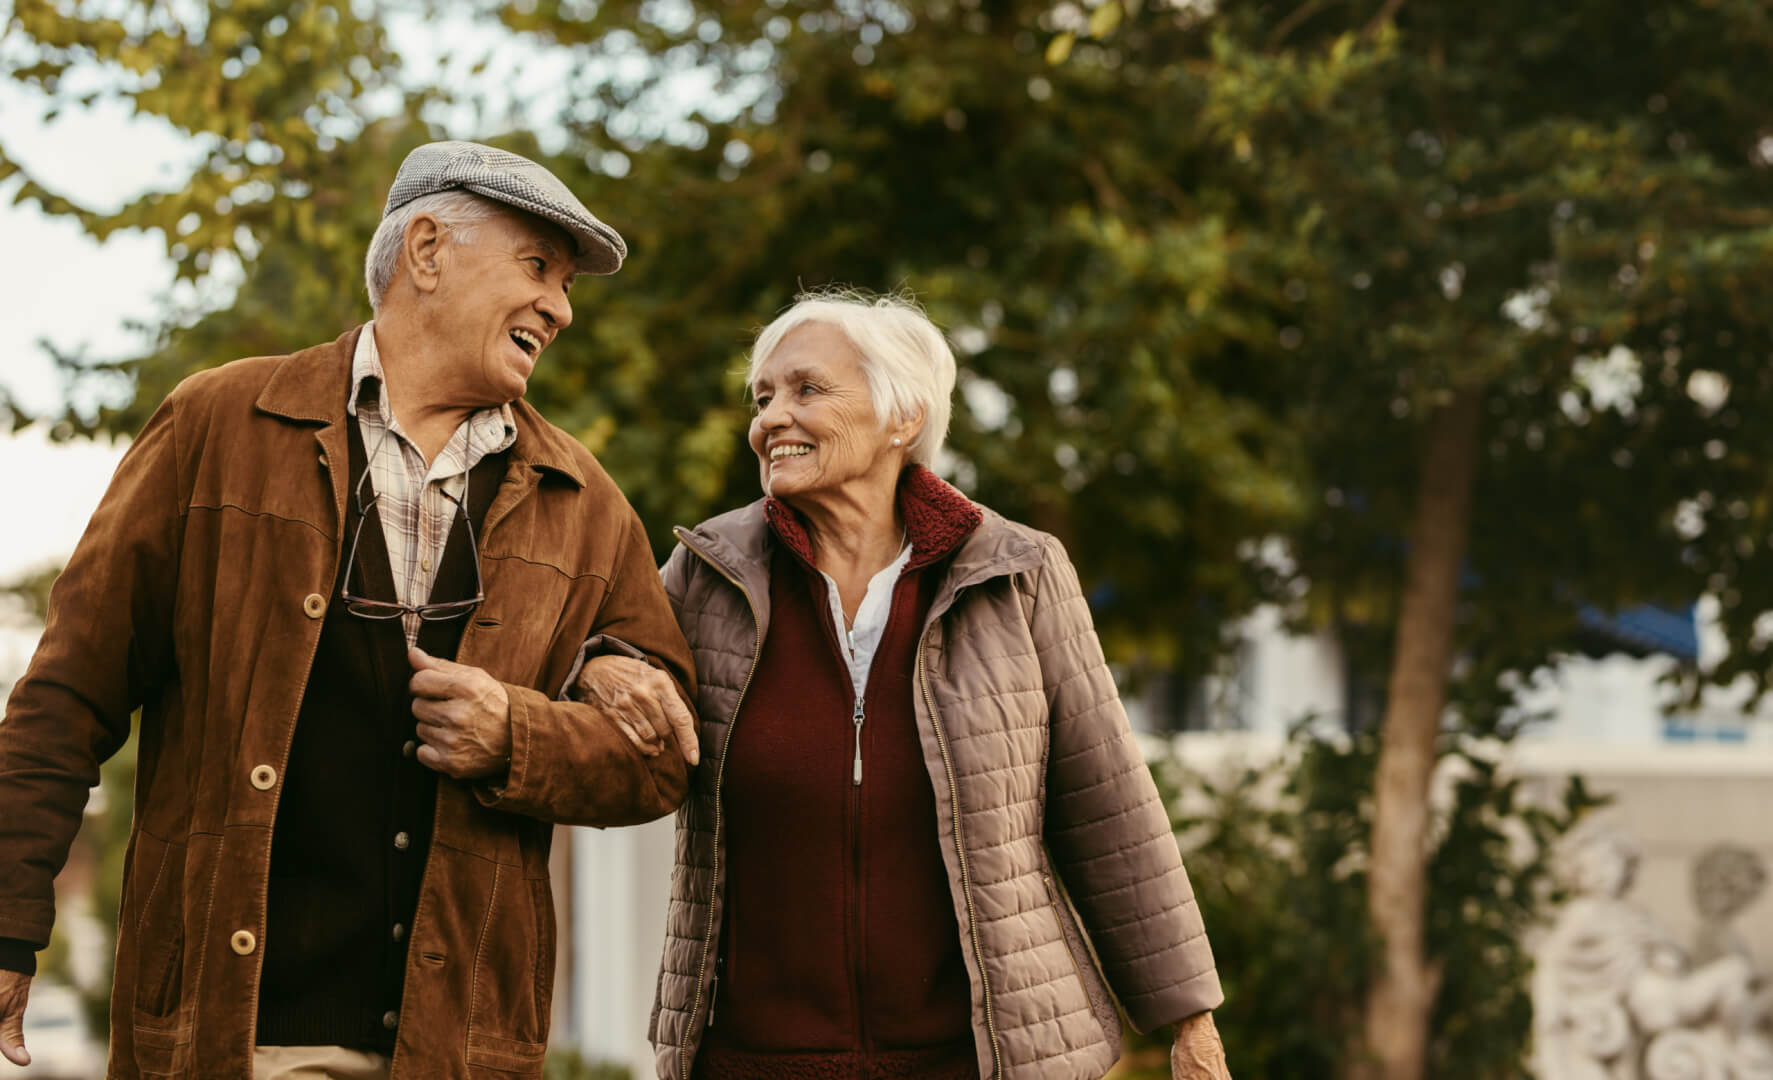 En la ilustración aparece una pareja de personas mayores cogidos del brazo mientras caminan por un parque mientras caminan, que es un ejercicio físico muy recomendable a realizar al menos 30 minutos al día. 